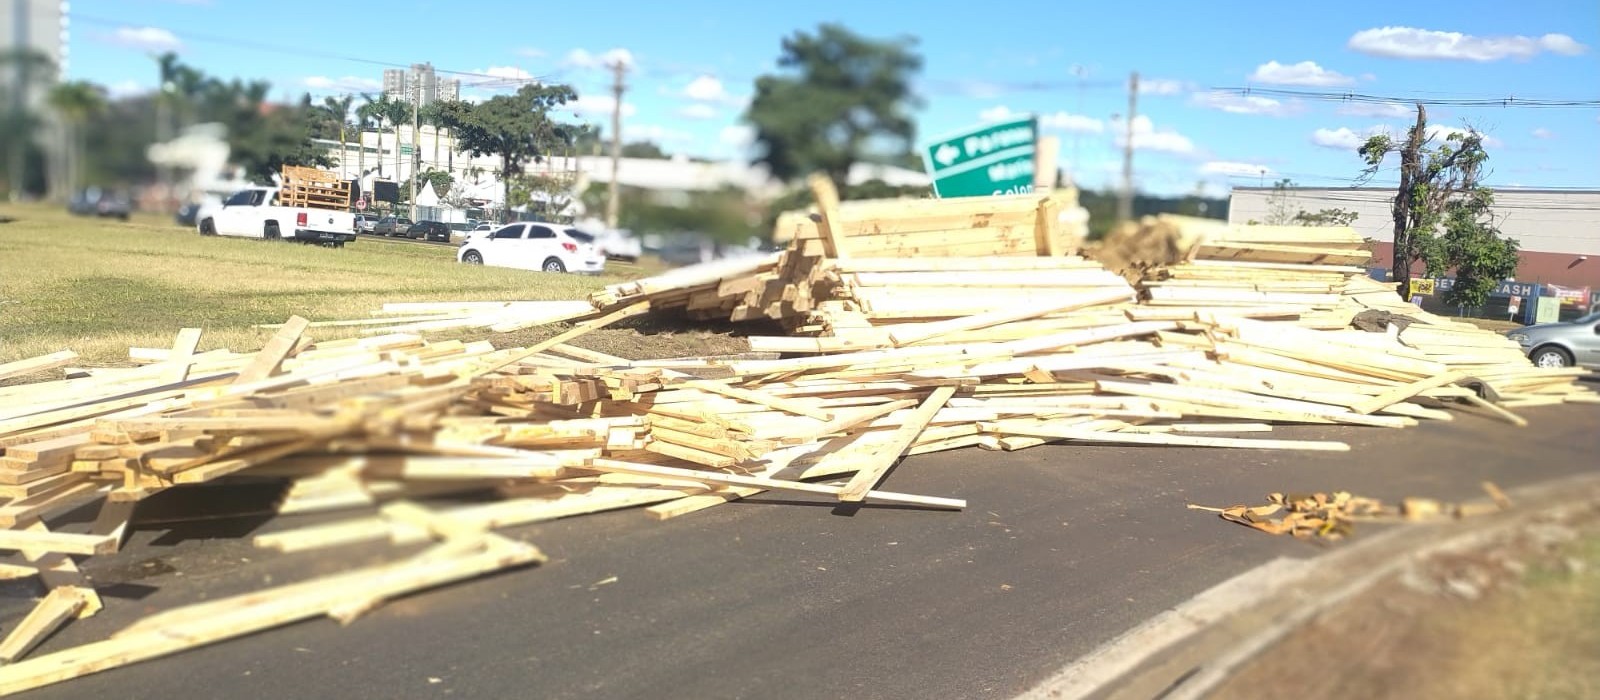 Carga de madeira cai de caminhão e interdita rotatória em Maringá